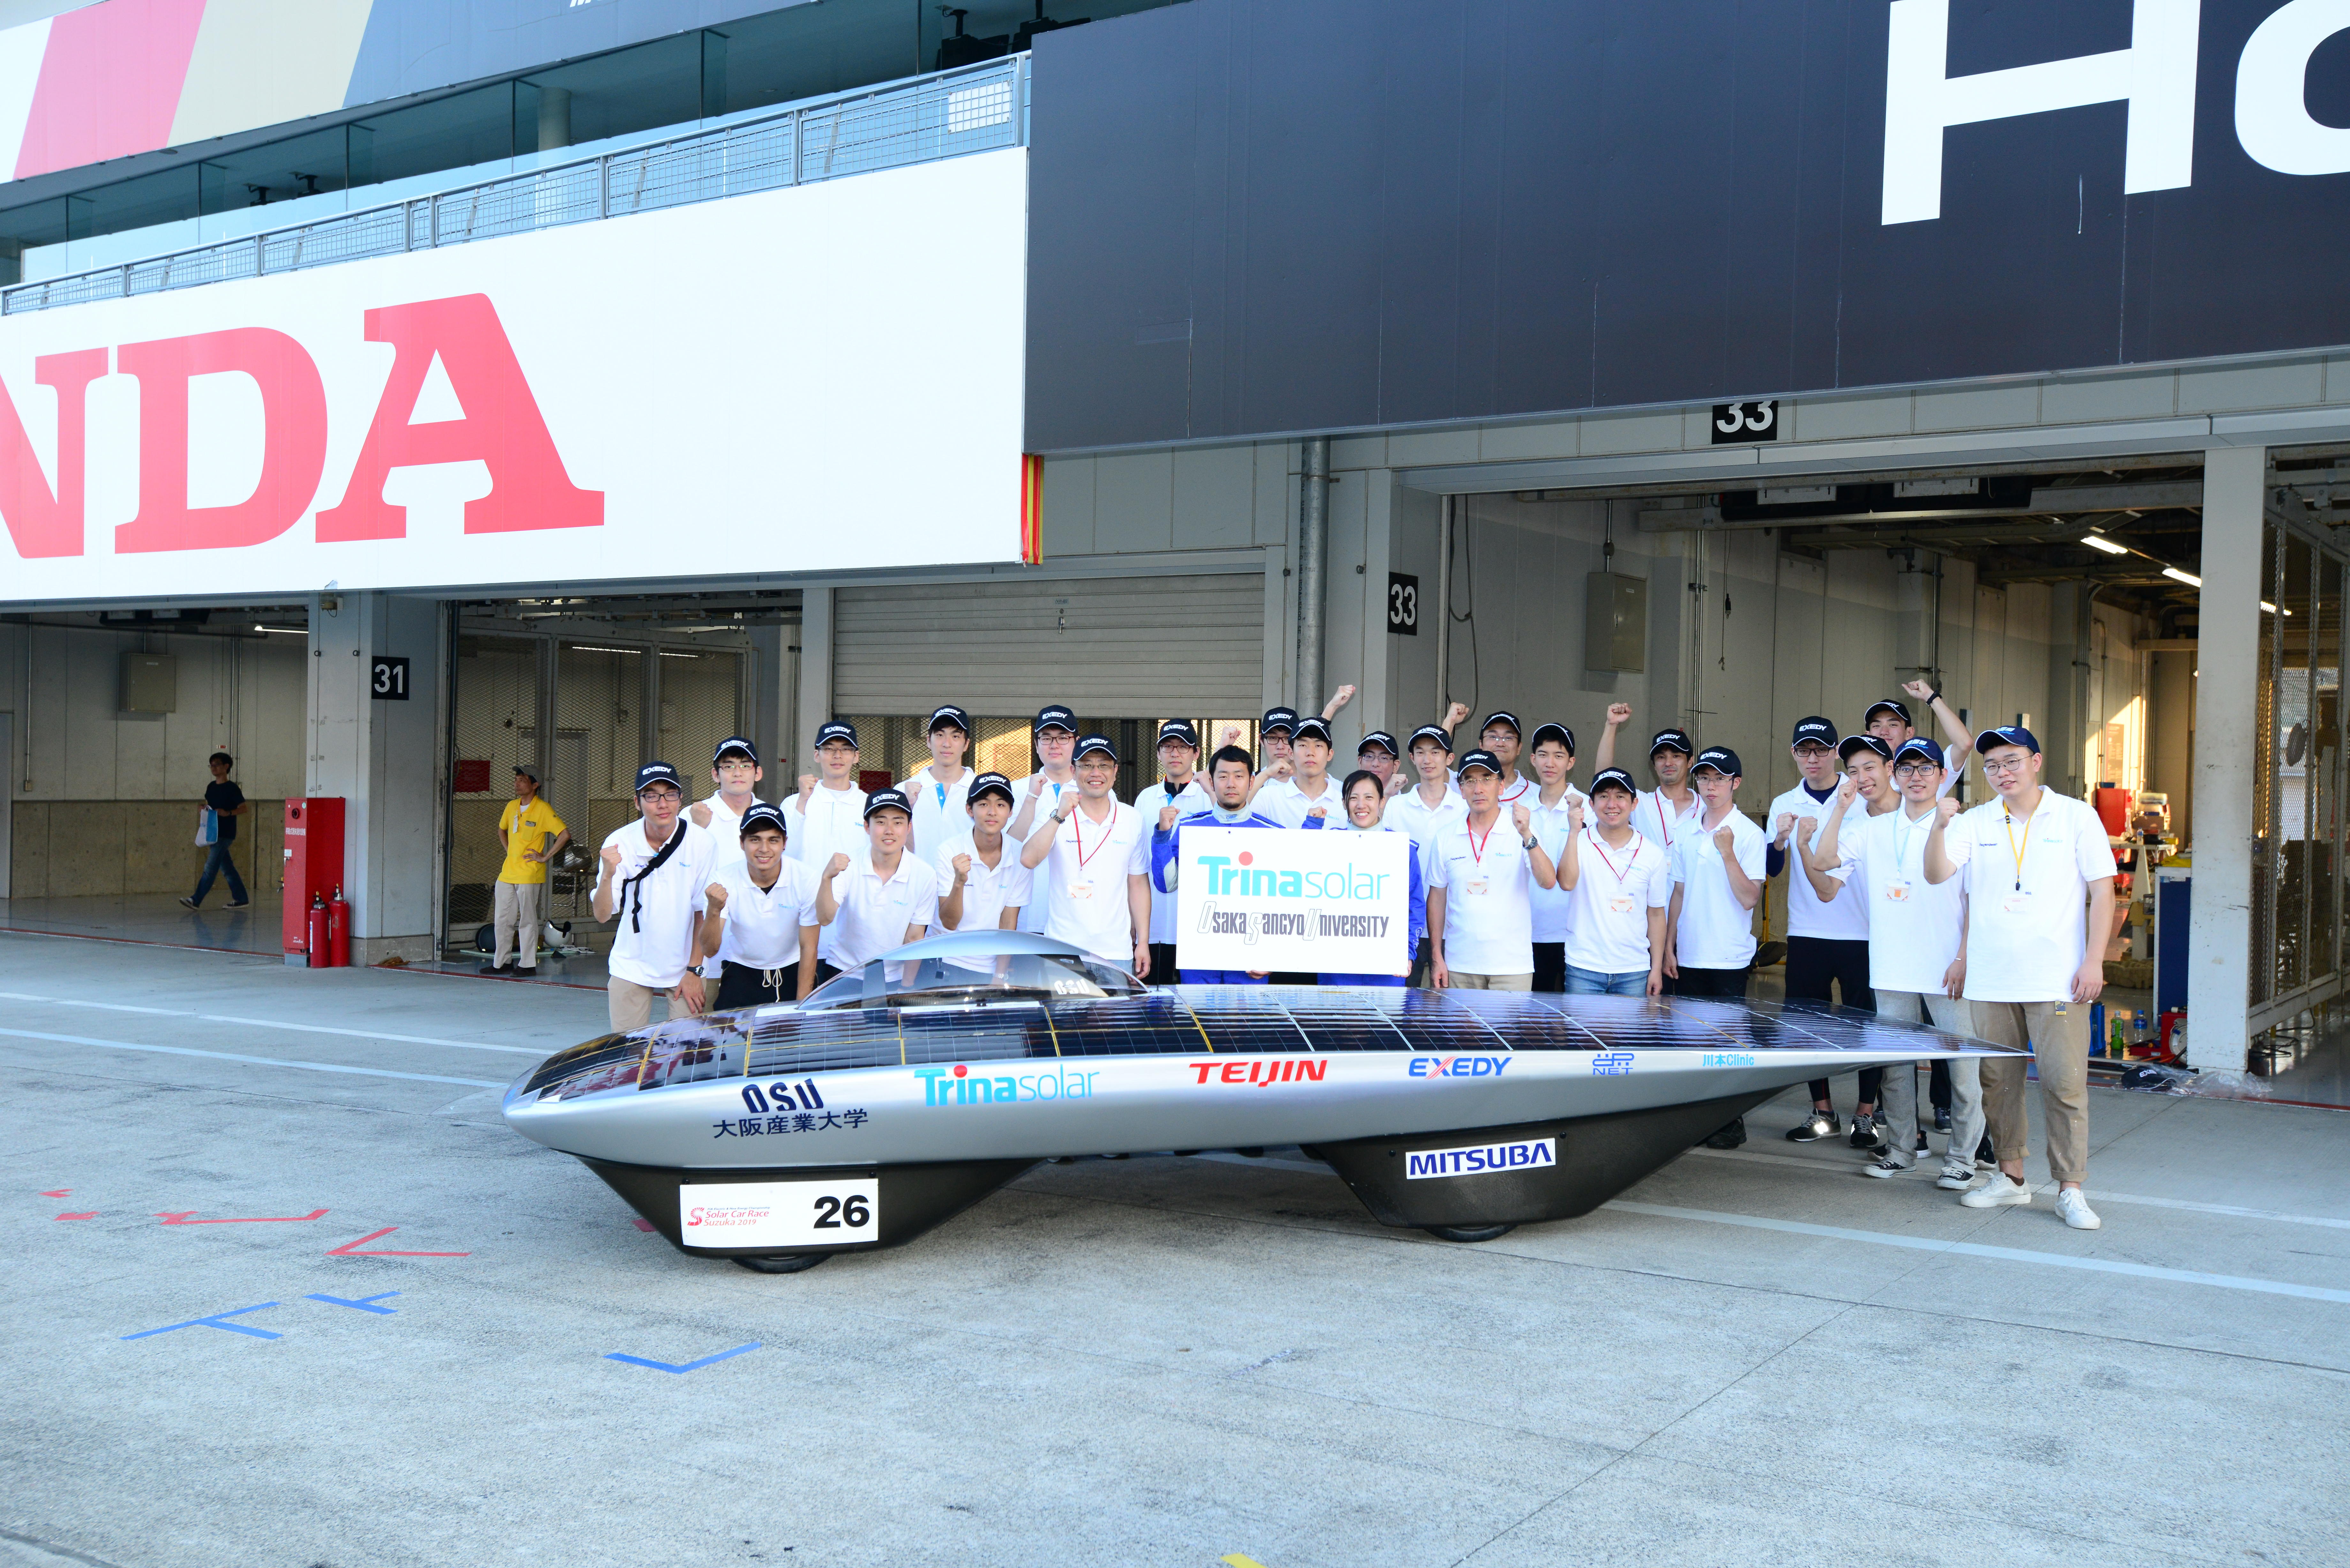 大阪産業大学ソーラーカープロジェクトが「ソーラーカーレース鈴鹿2019」で総合2位 -- ドリームクラスでは優勝